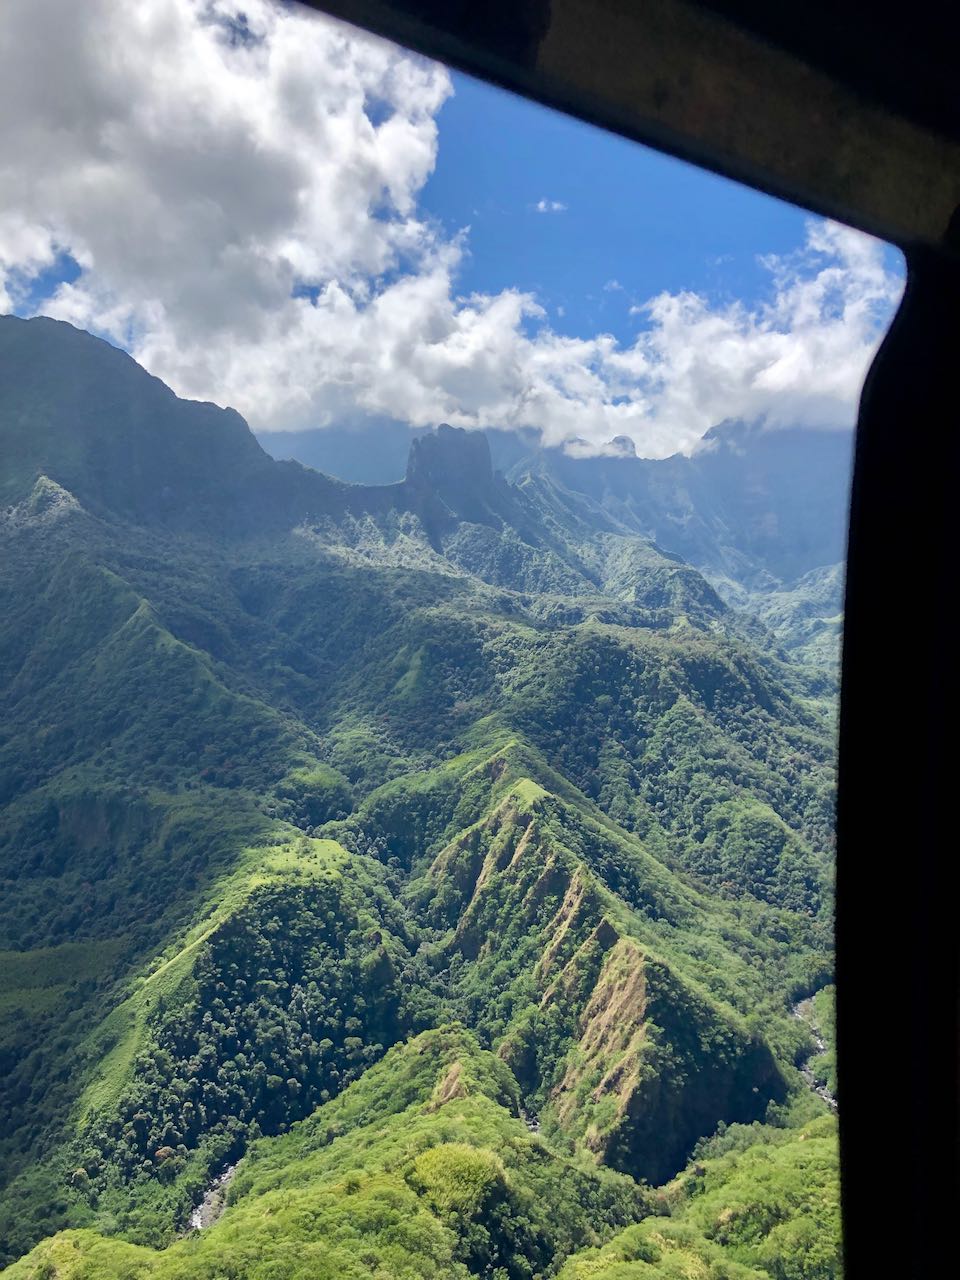 Vol en hélicoptère Tahiti